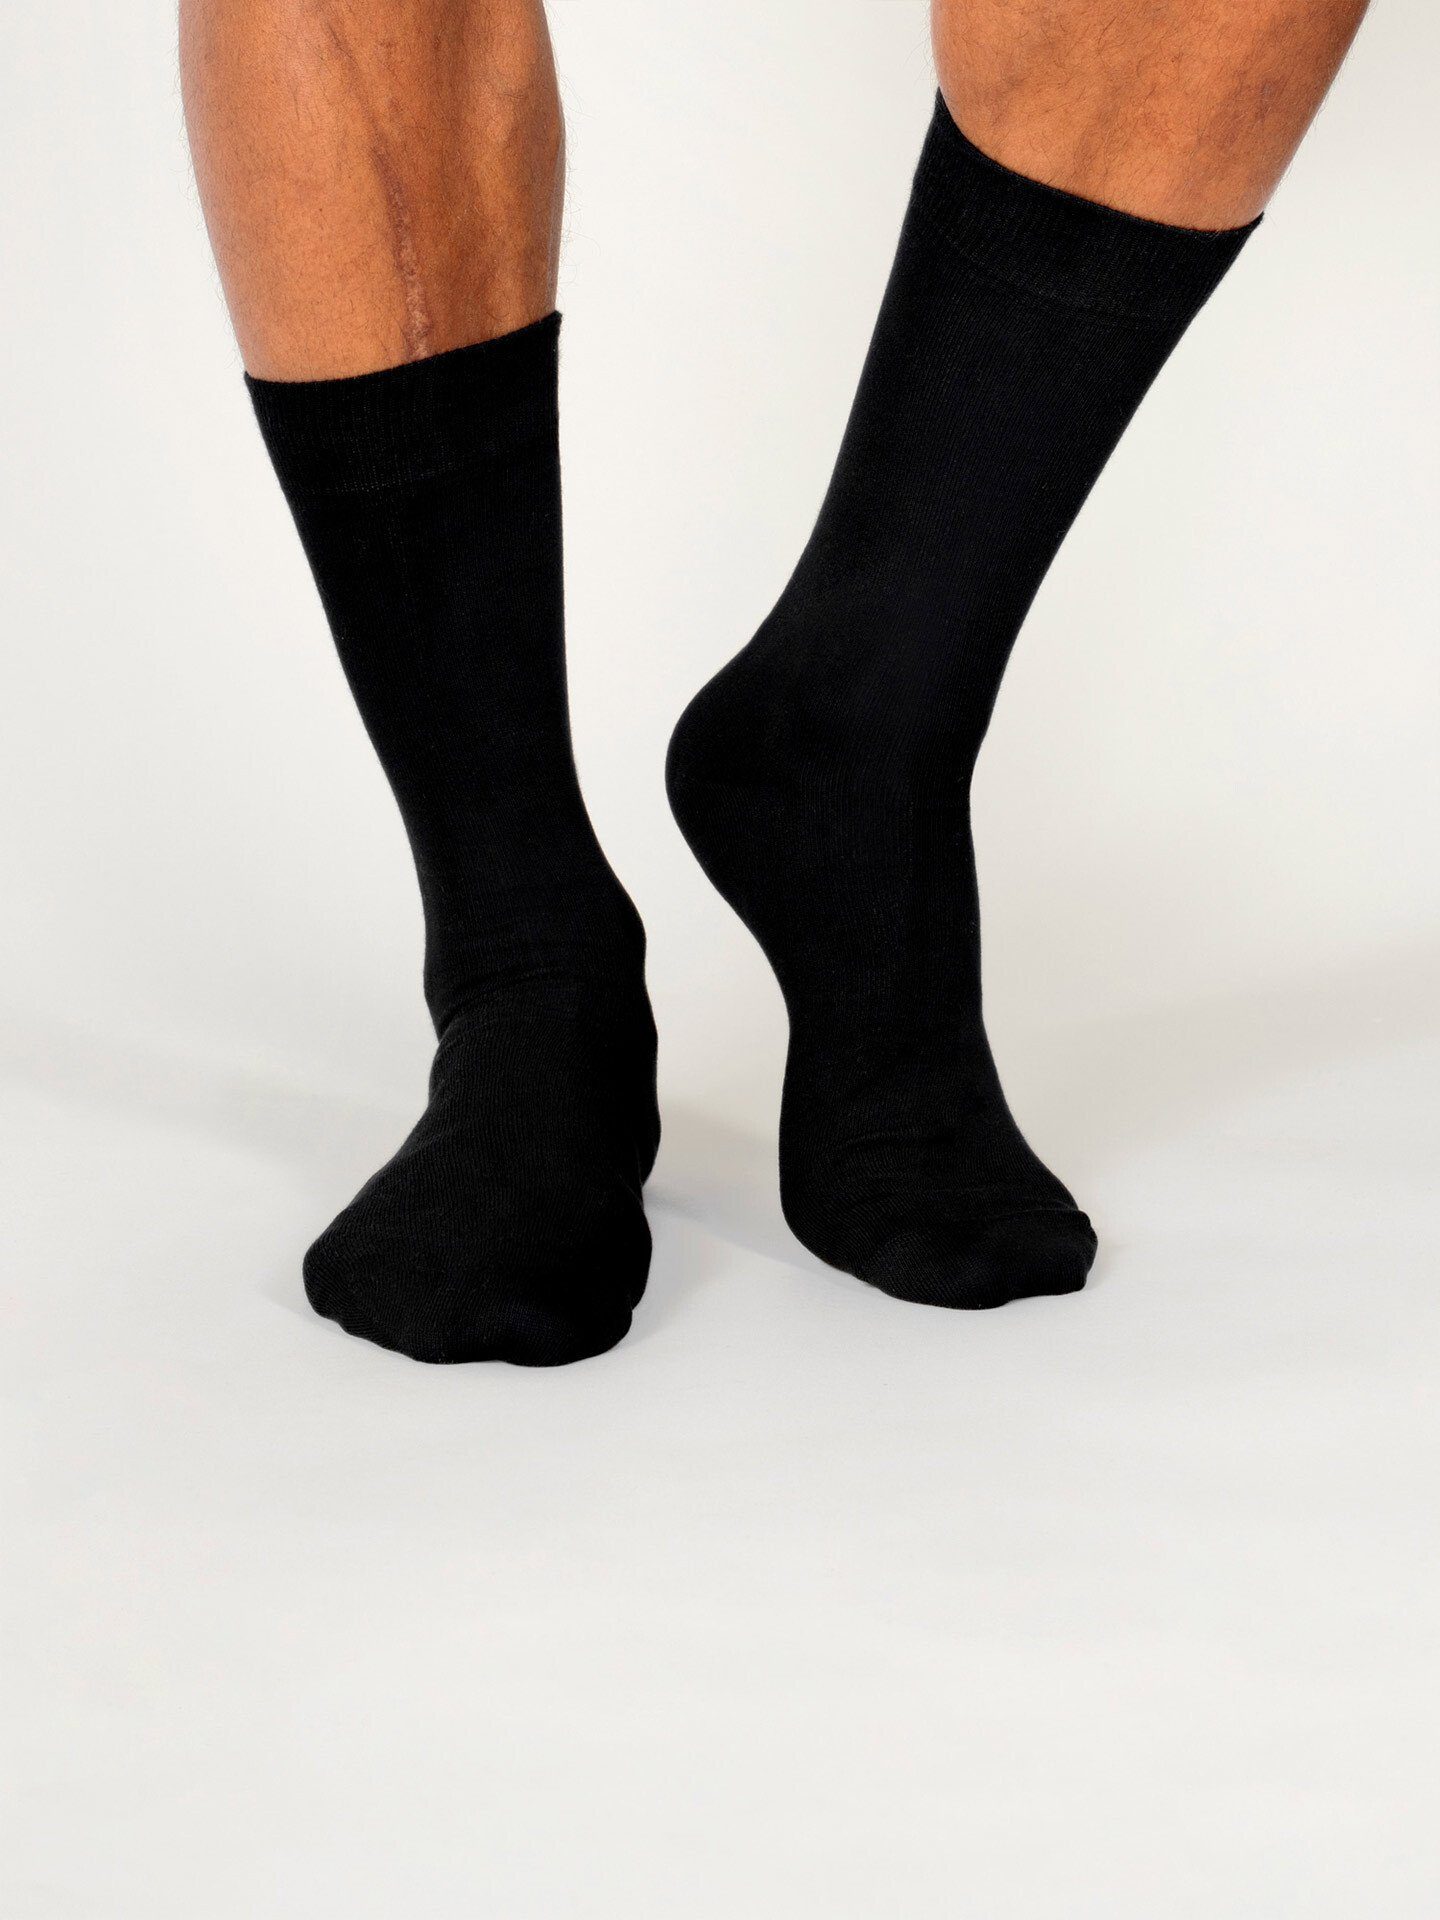 Textil Socken Erlich Maxi schwarz (3-Paar)